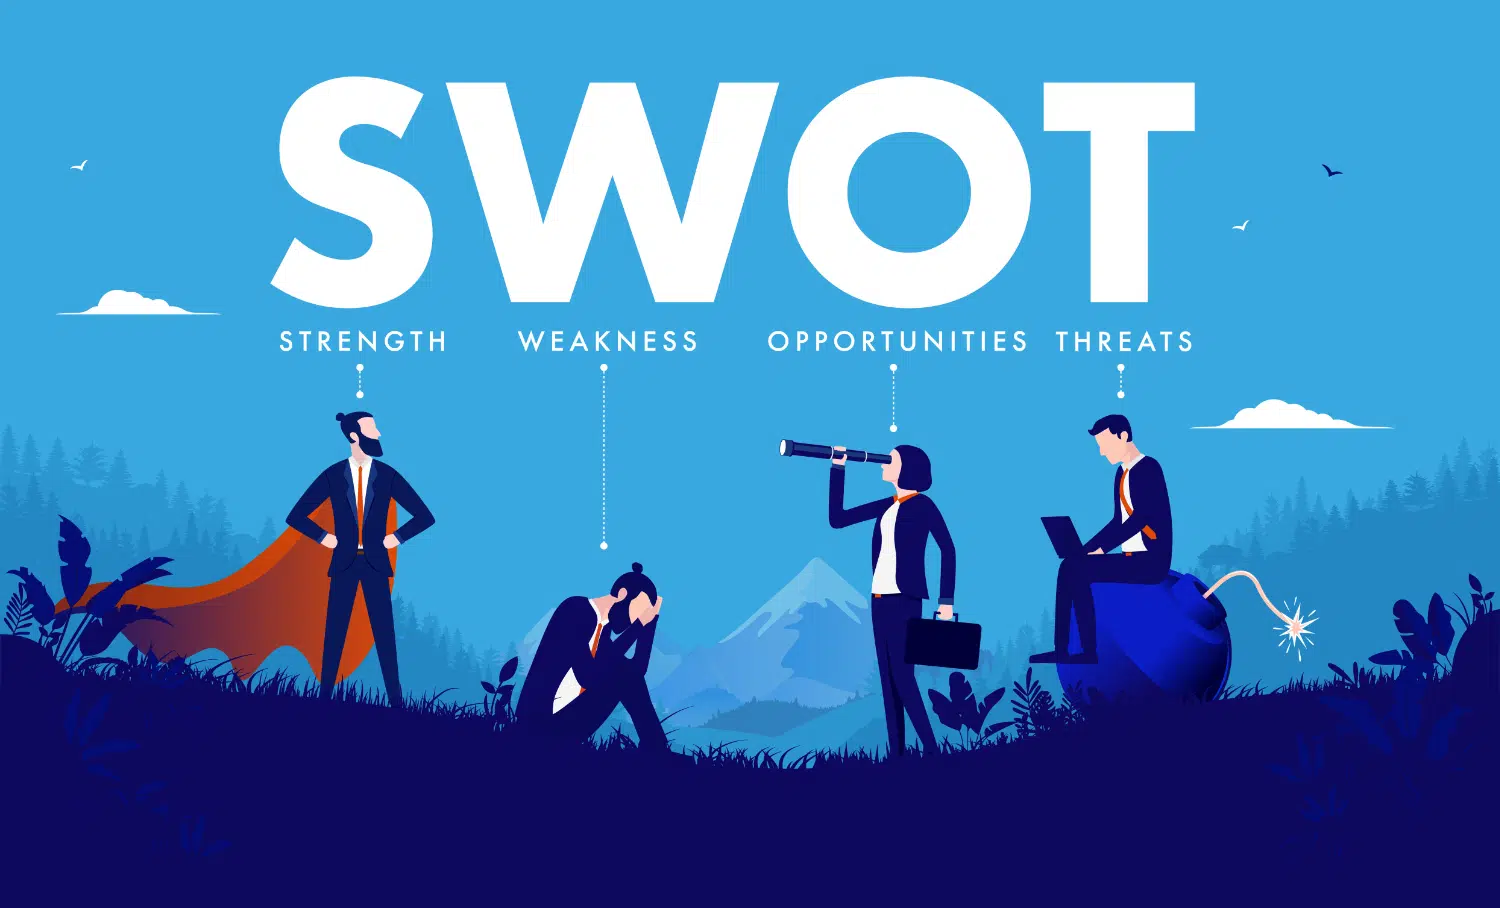 L'analyse SWOT(forces, faiblesses, opportunités et menaces) regroupe des facteurs internes et externes à votre entreprise ayant une influence sur l'état de santé de celle-ci.